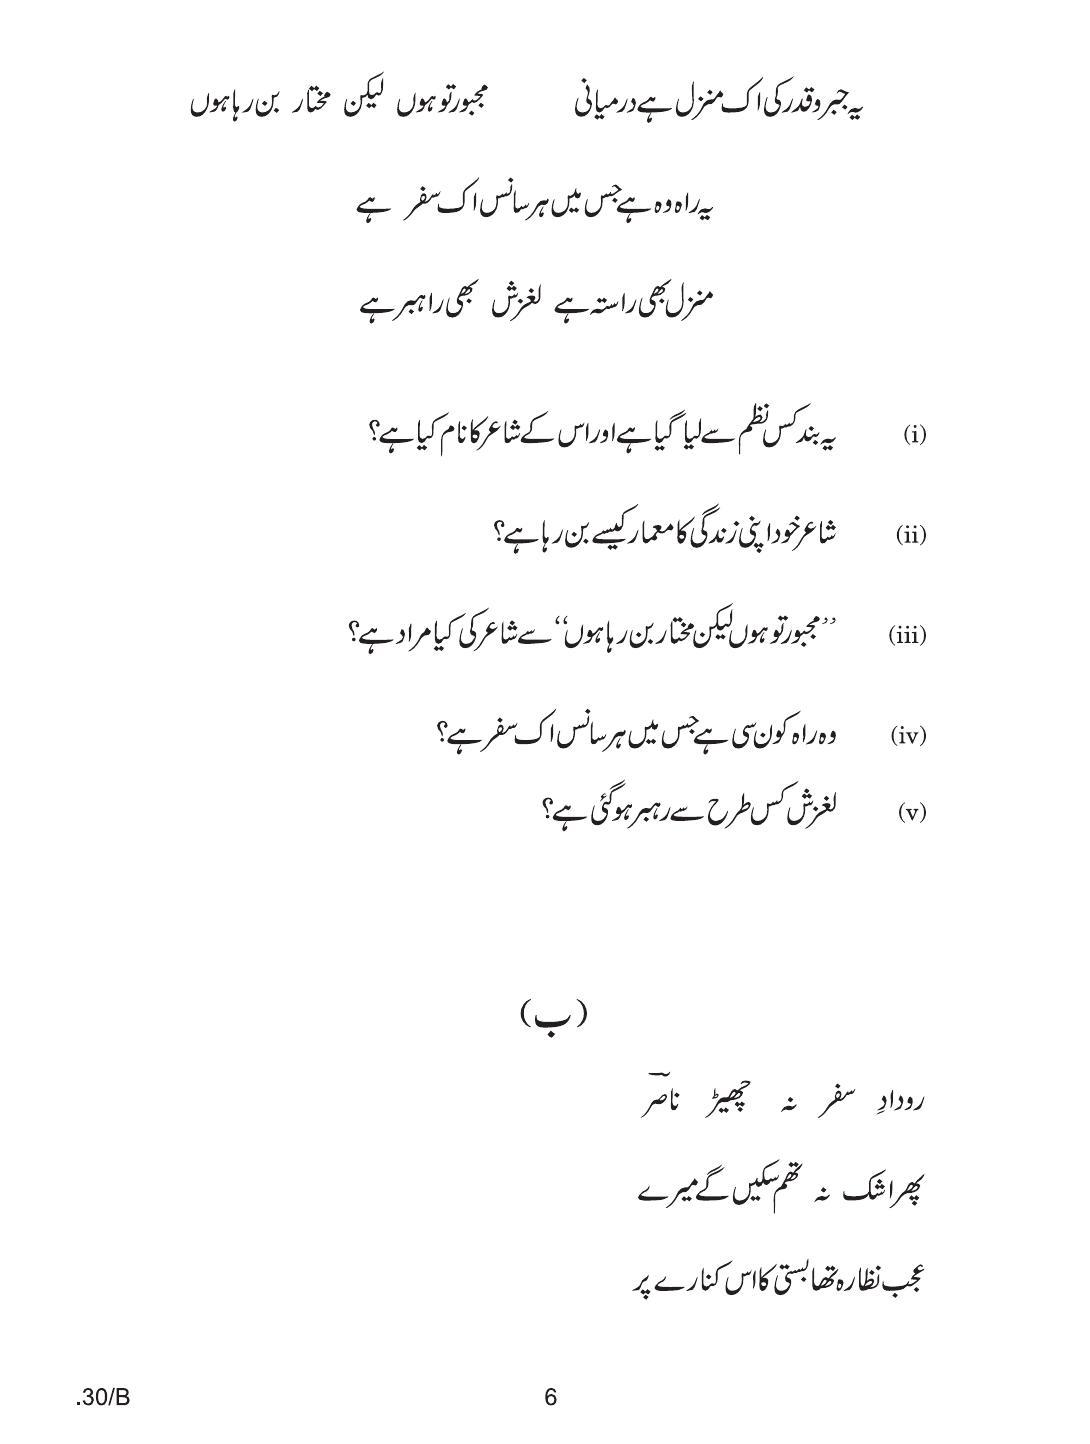 CBSE Class 12 Urdu Elective 2020 Compartment Question Paper - Page 6